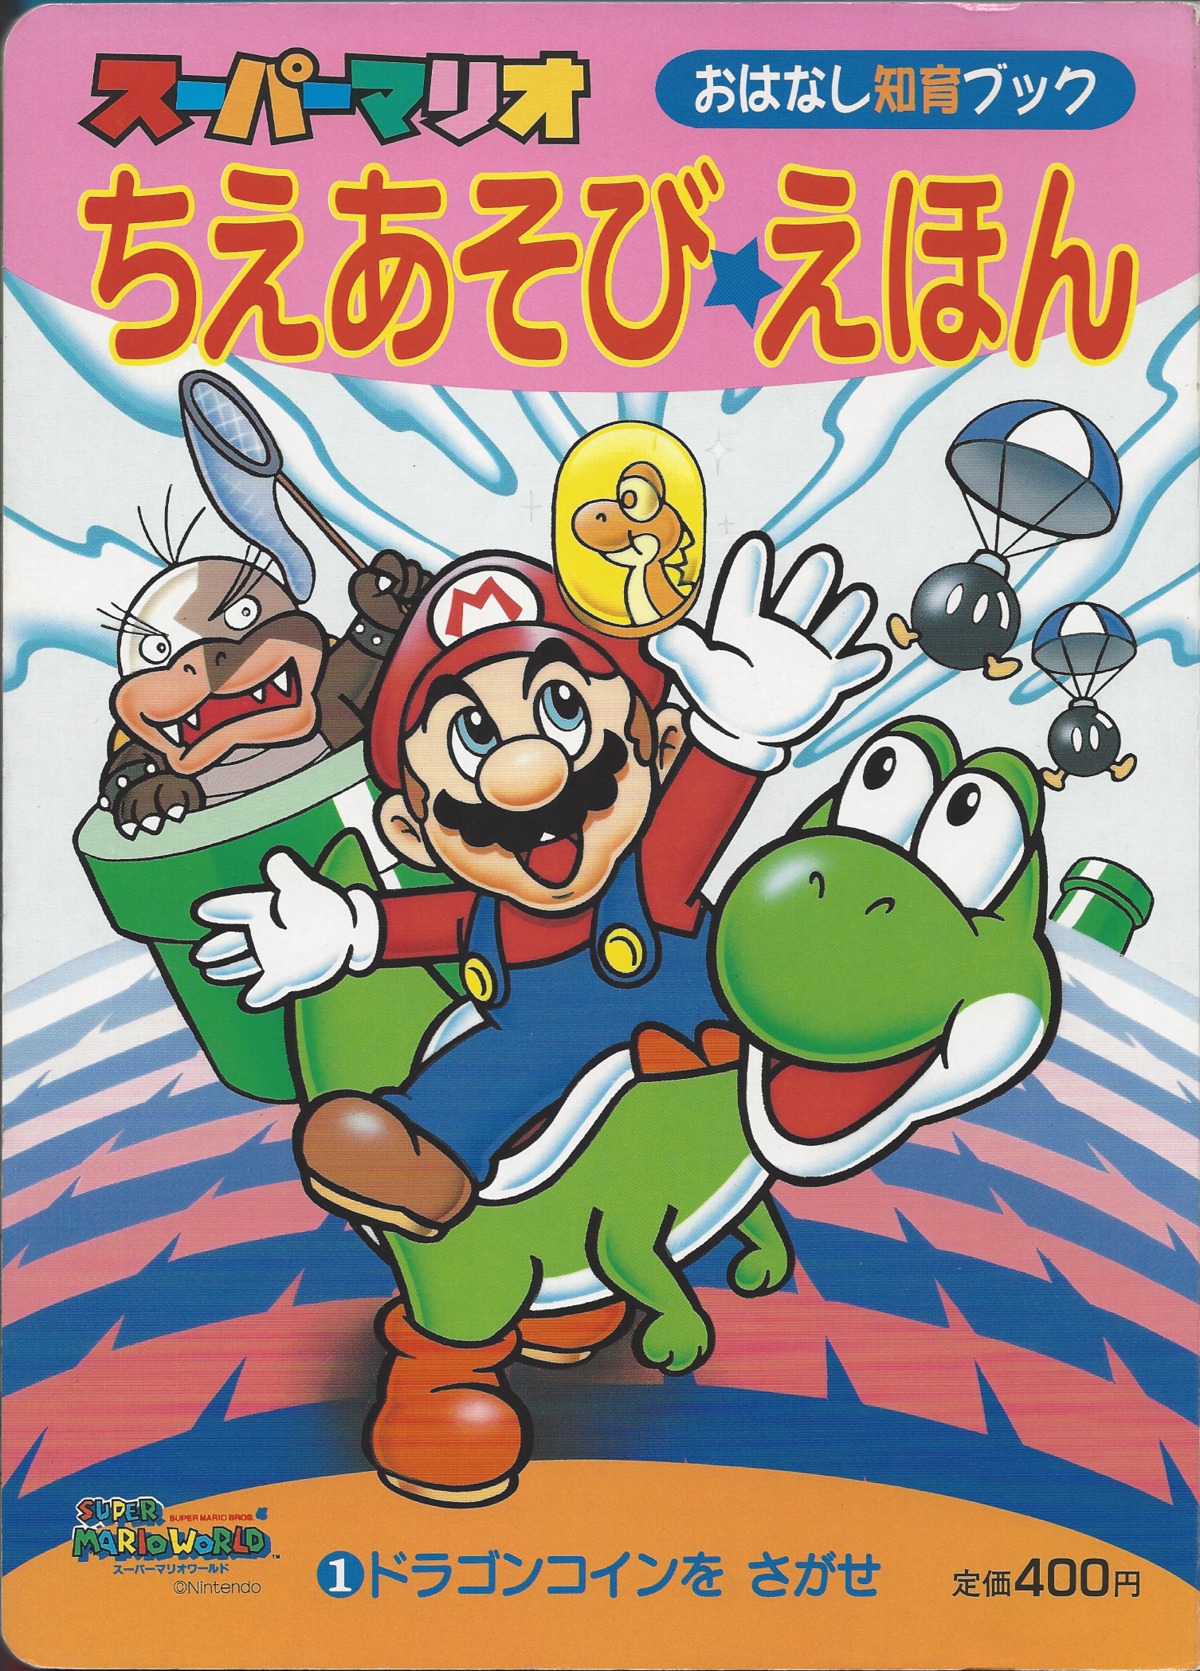 Super Mario Ehon Super Mario Wiki The Mario Encyclopedia